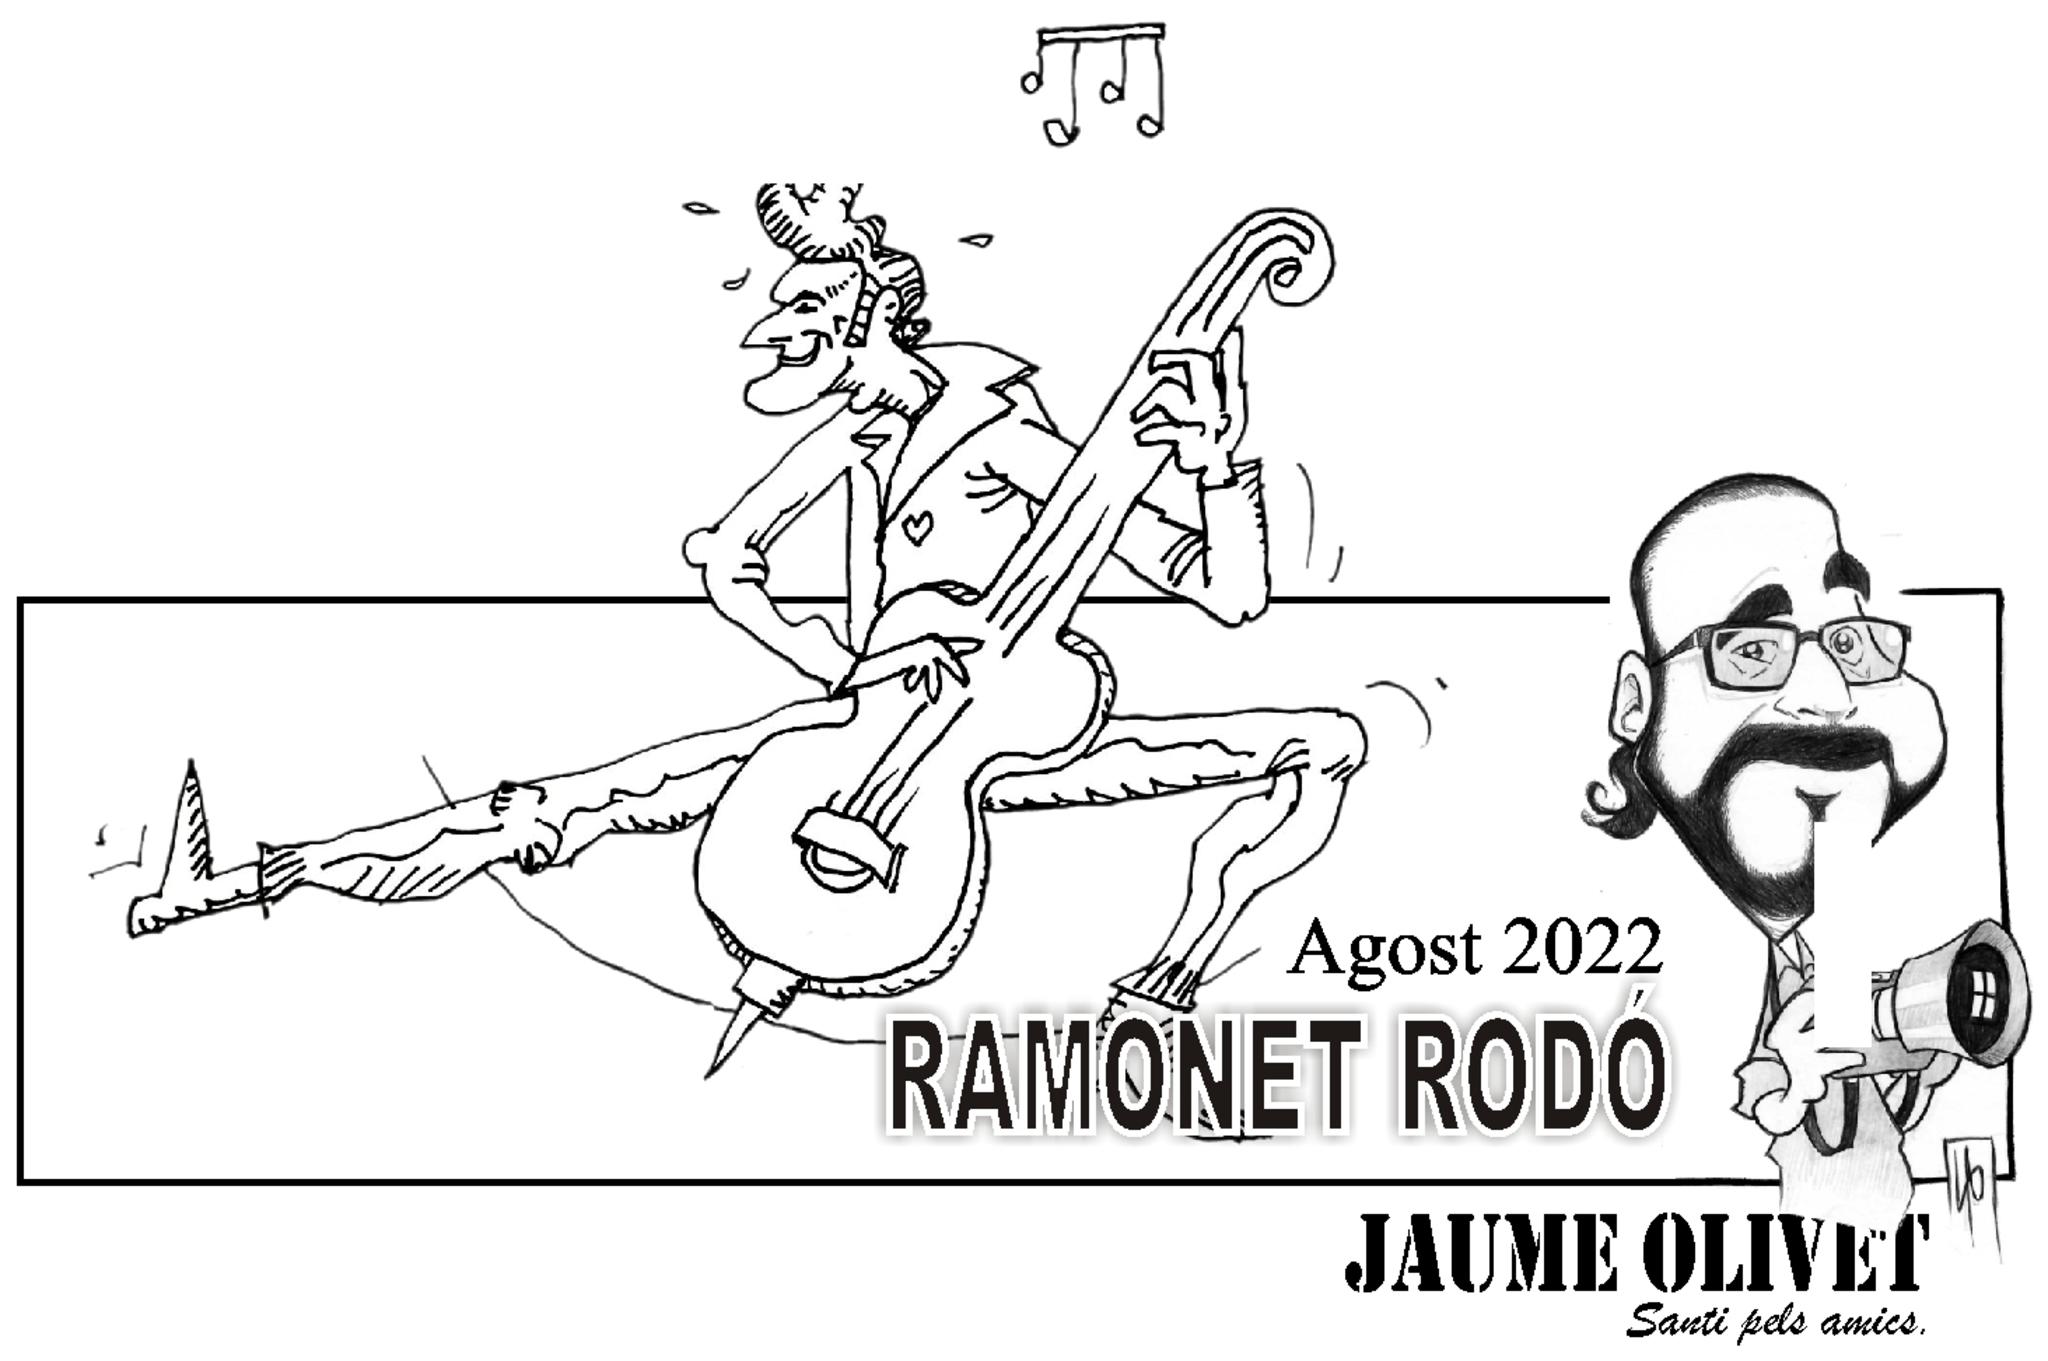 © Ramonet rodó 2022